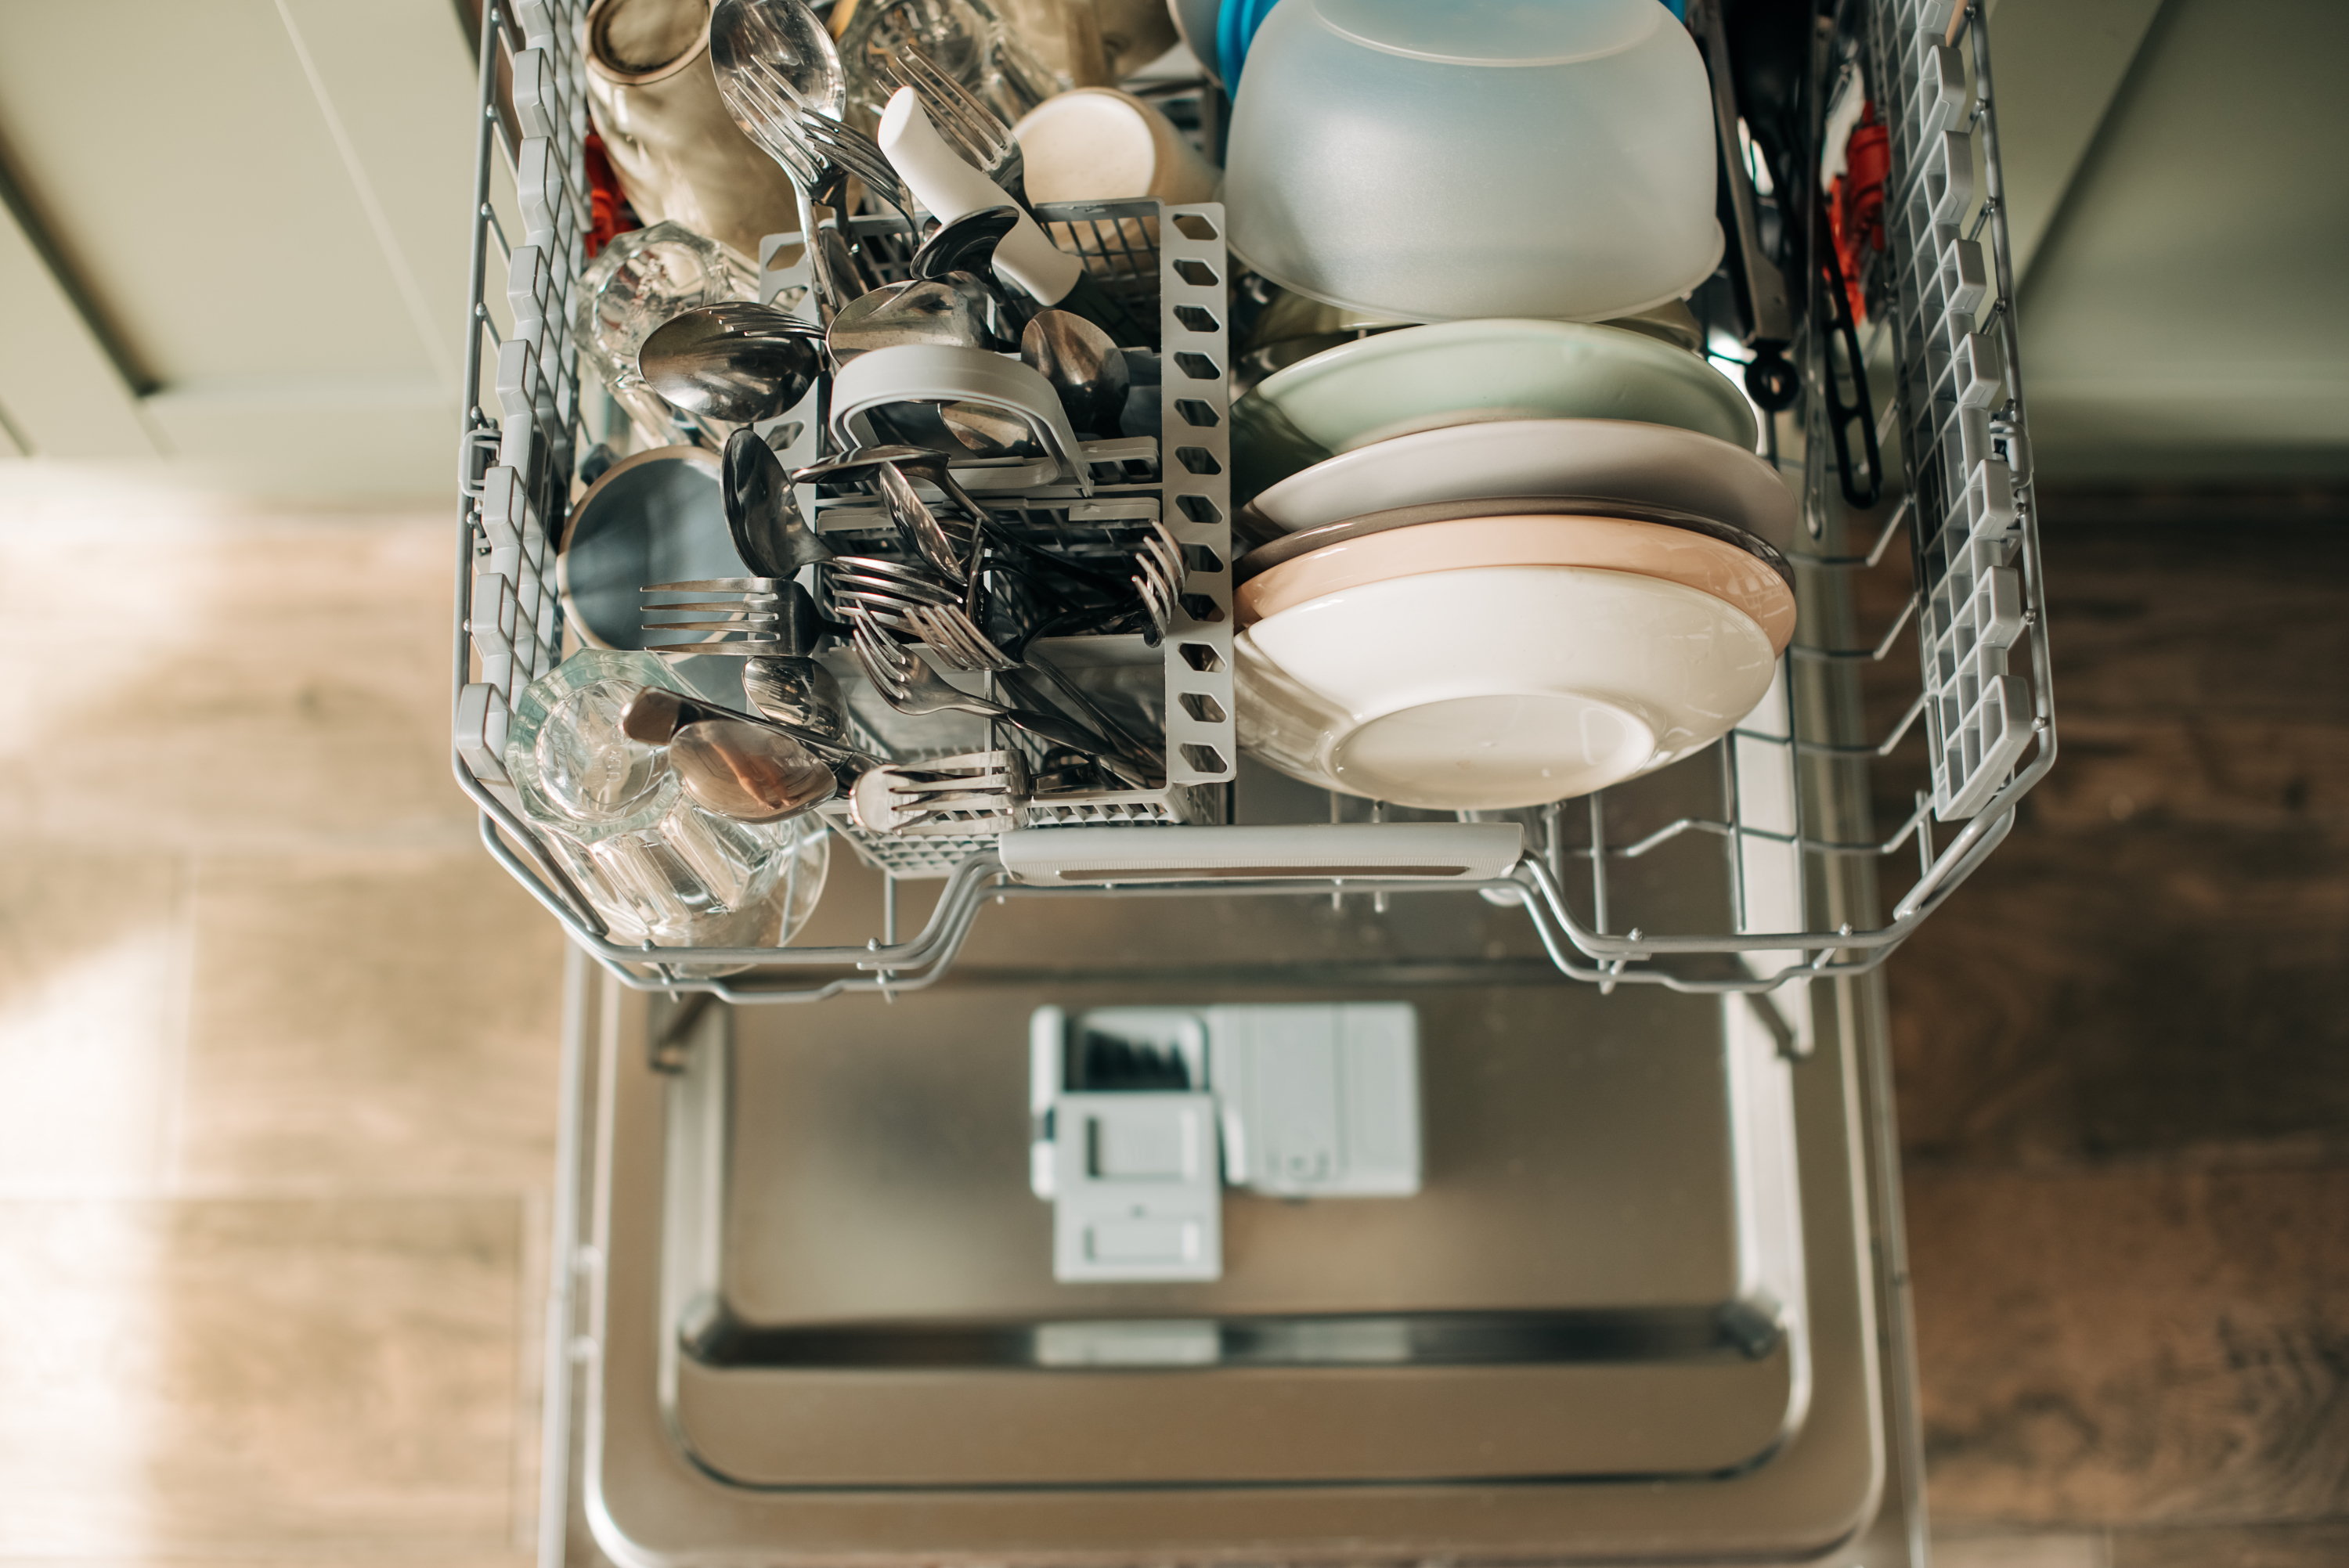 Nettoyer un lave-vaisselle efficacement : tous les conseils